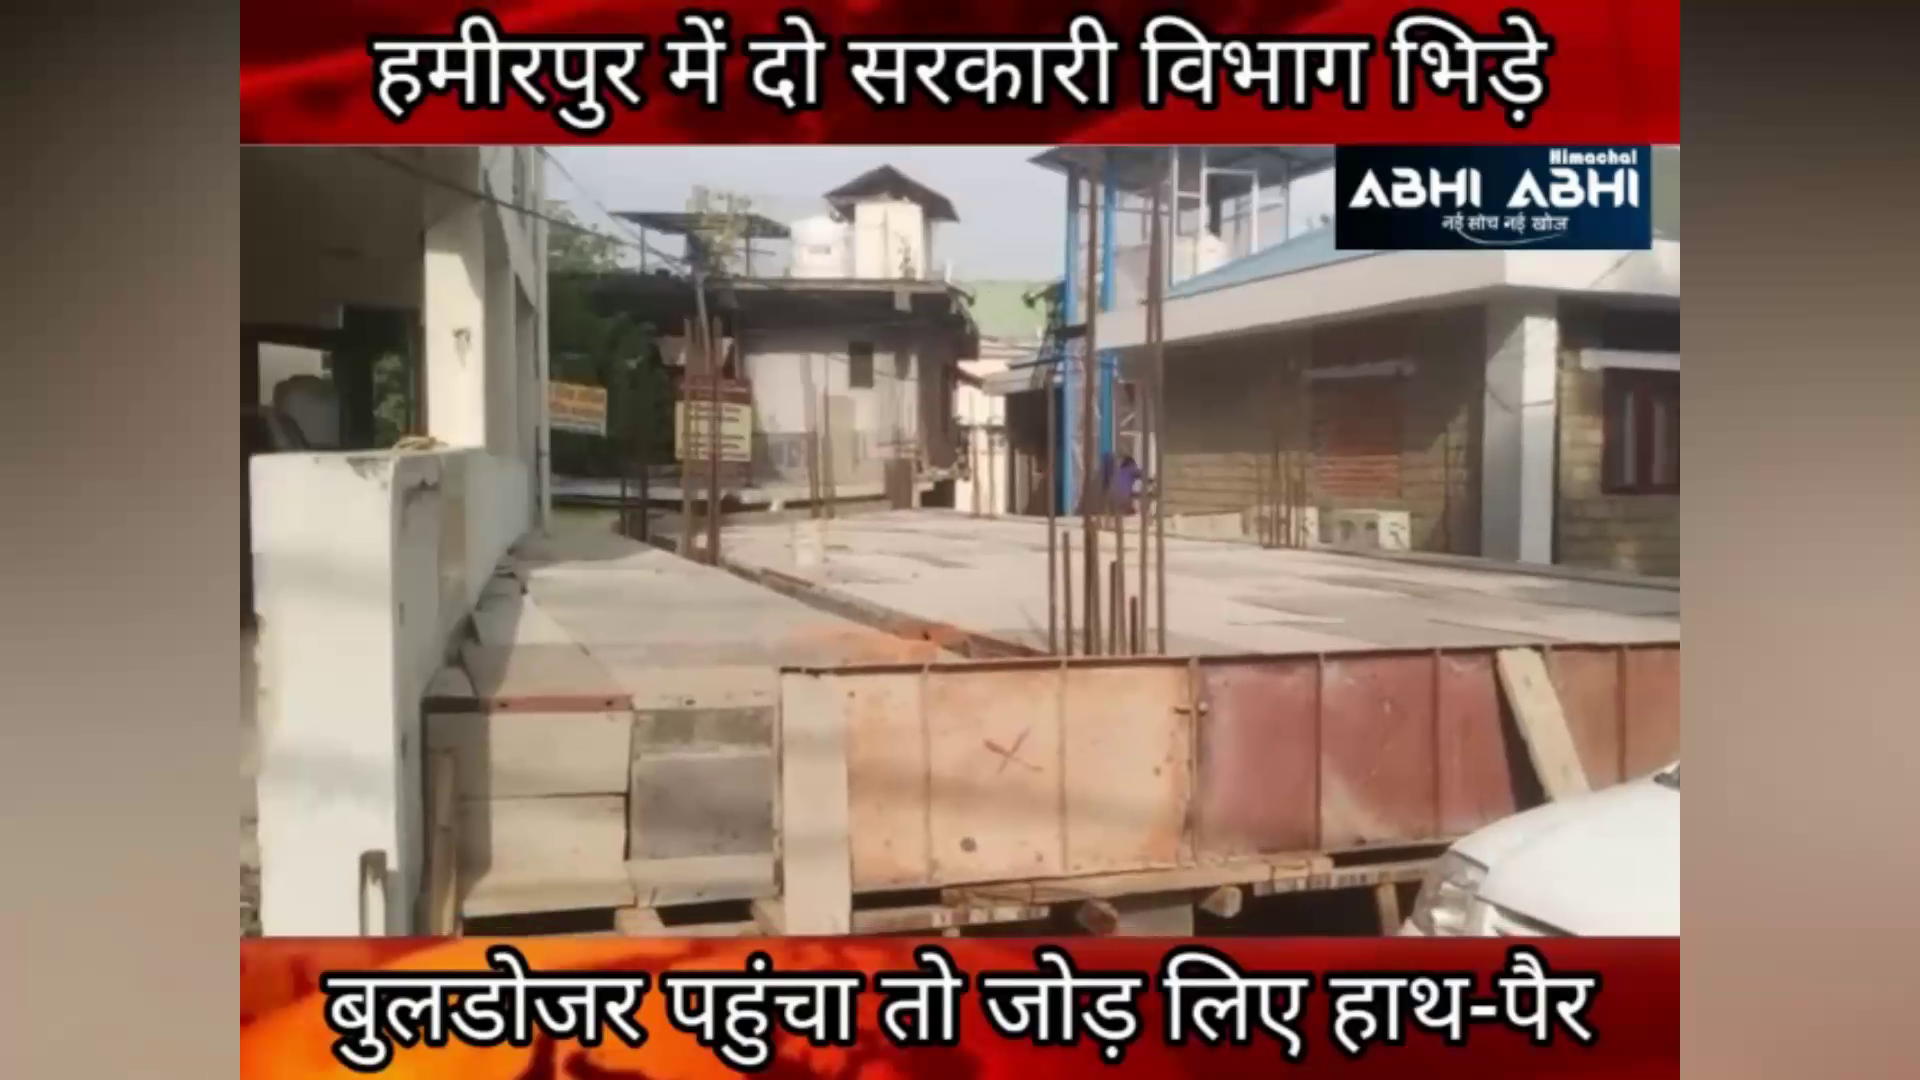 हमीरपुर में दो सरकारी विभाग भिड़े  बुलडोजर पहुंचा तो जोड़ लिए हाथ-पैर